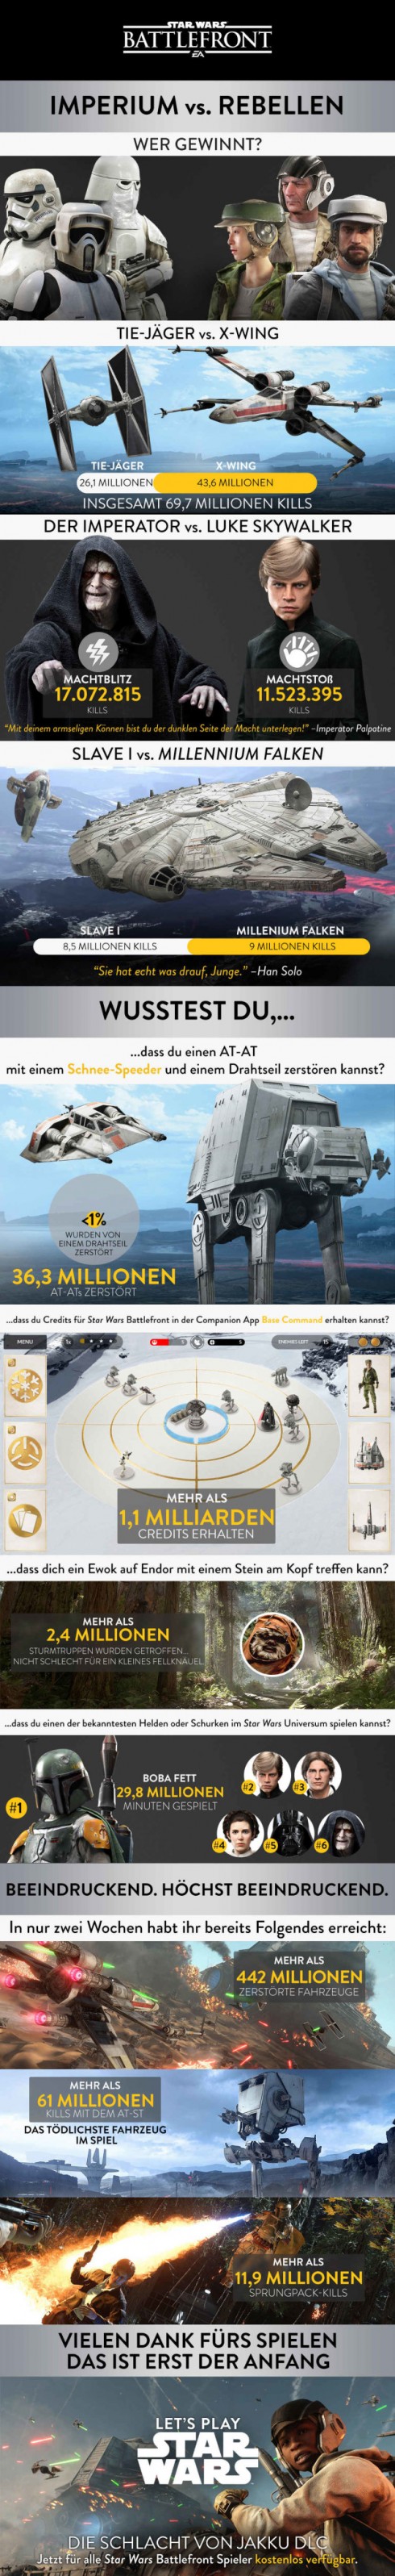 Star-Wars-Battlefront-635x4139